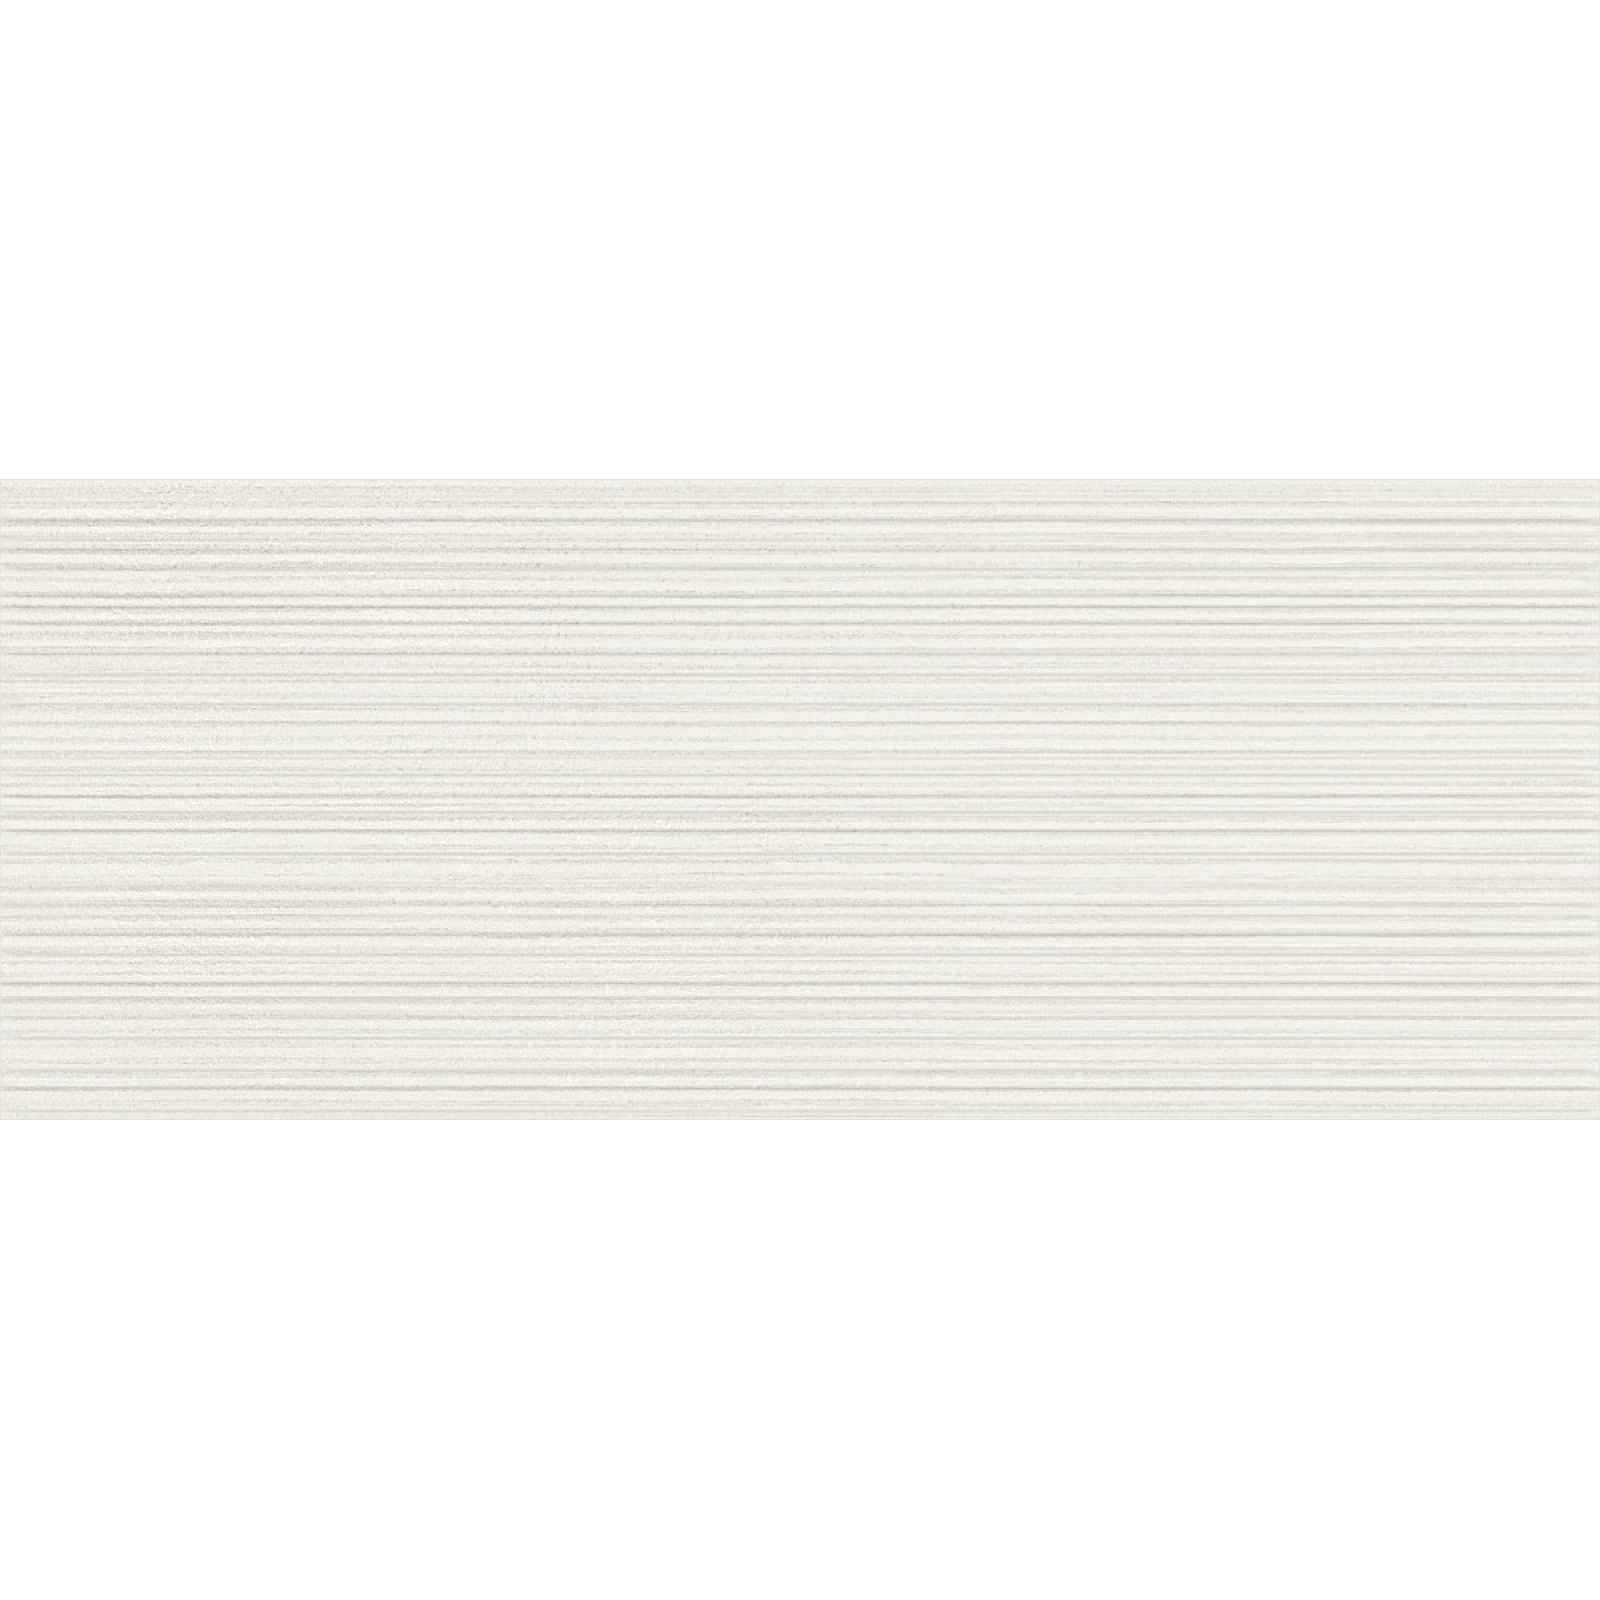 Obklad Del Conca Espressione bianco bambu 20x50 cm mat 54ES10BA